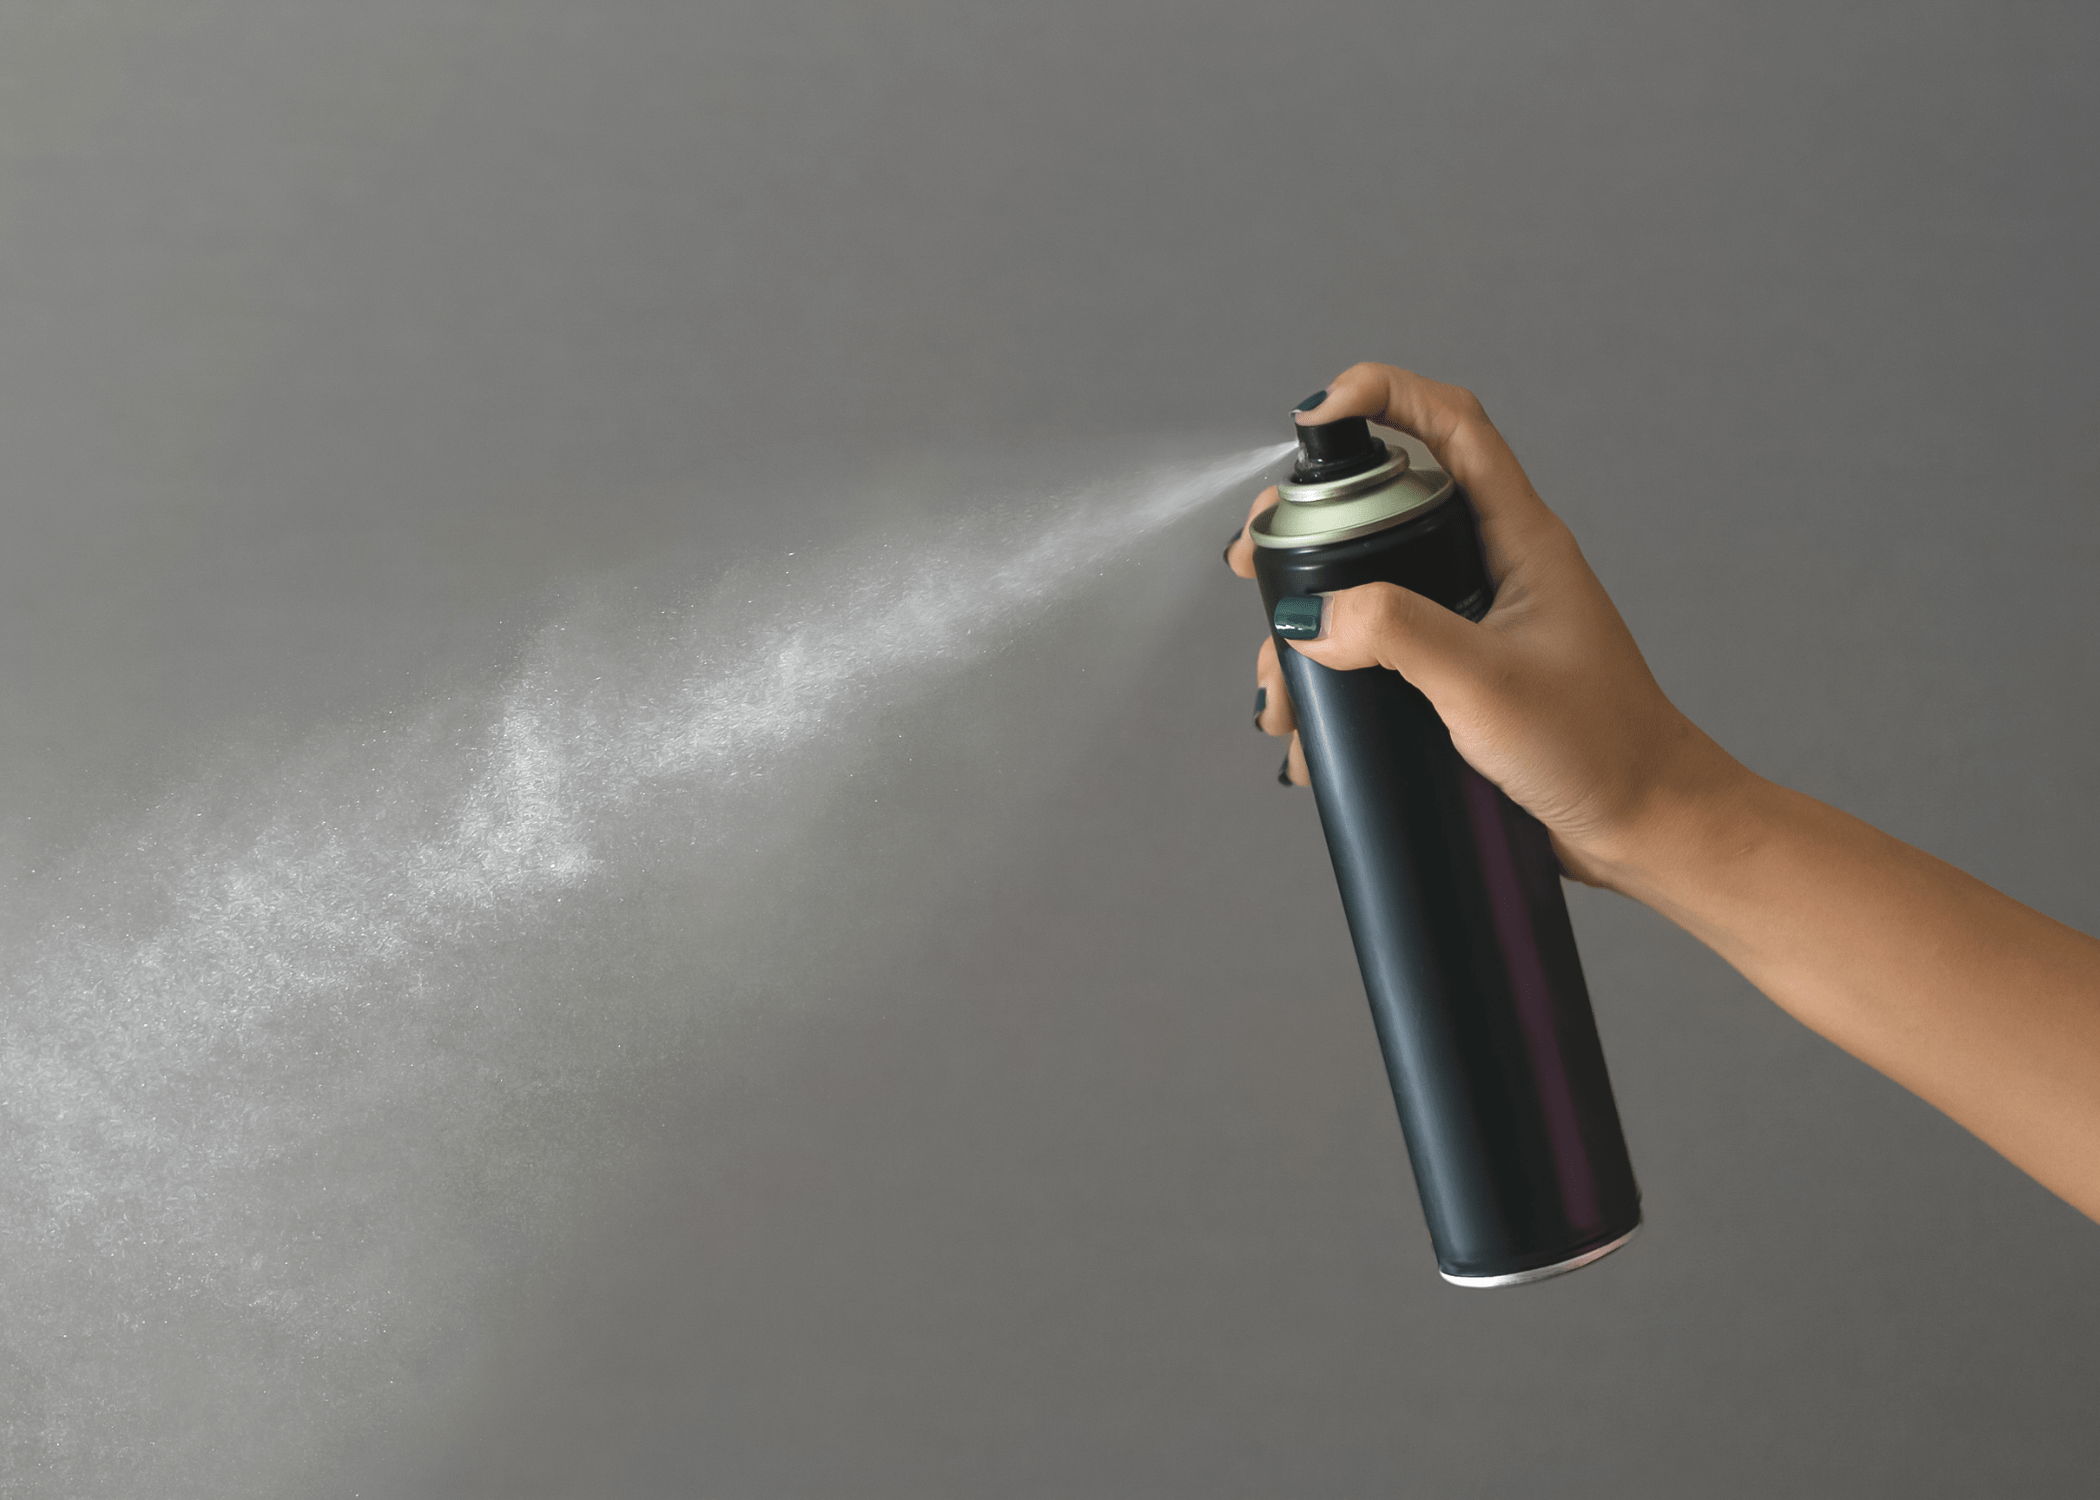 hairspray bottle being sprayed